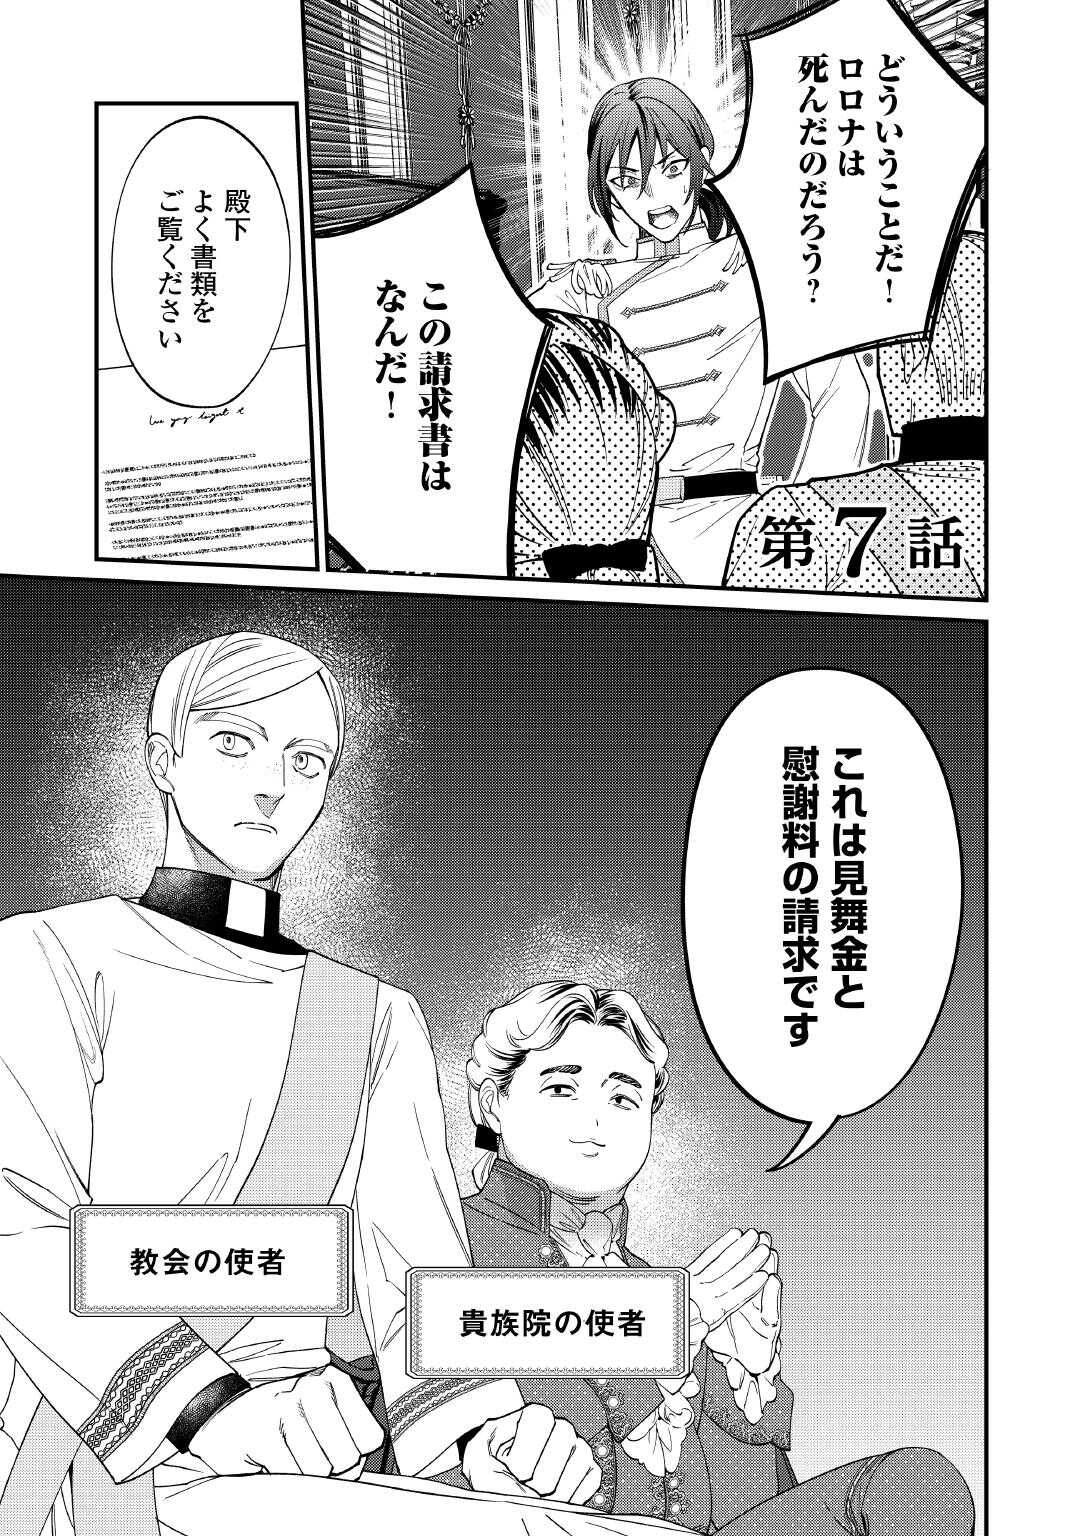 Watashi ga Shinde Manzoku desu ka? - Chapter 7 - Page 1